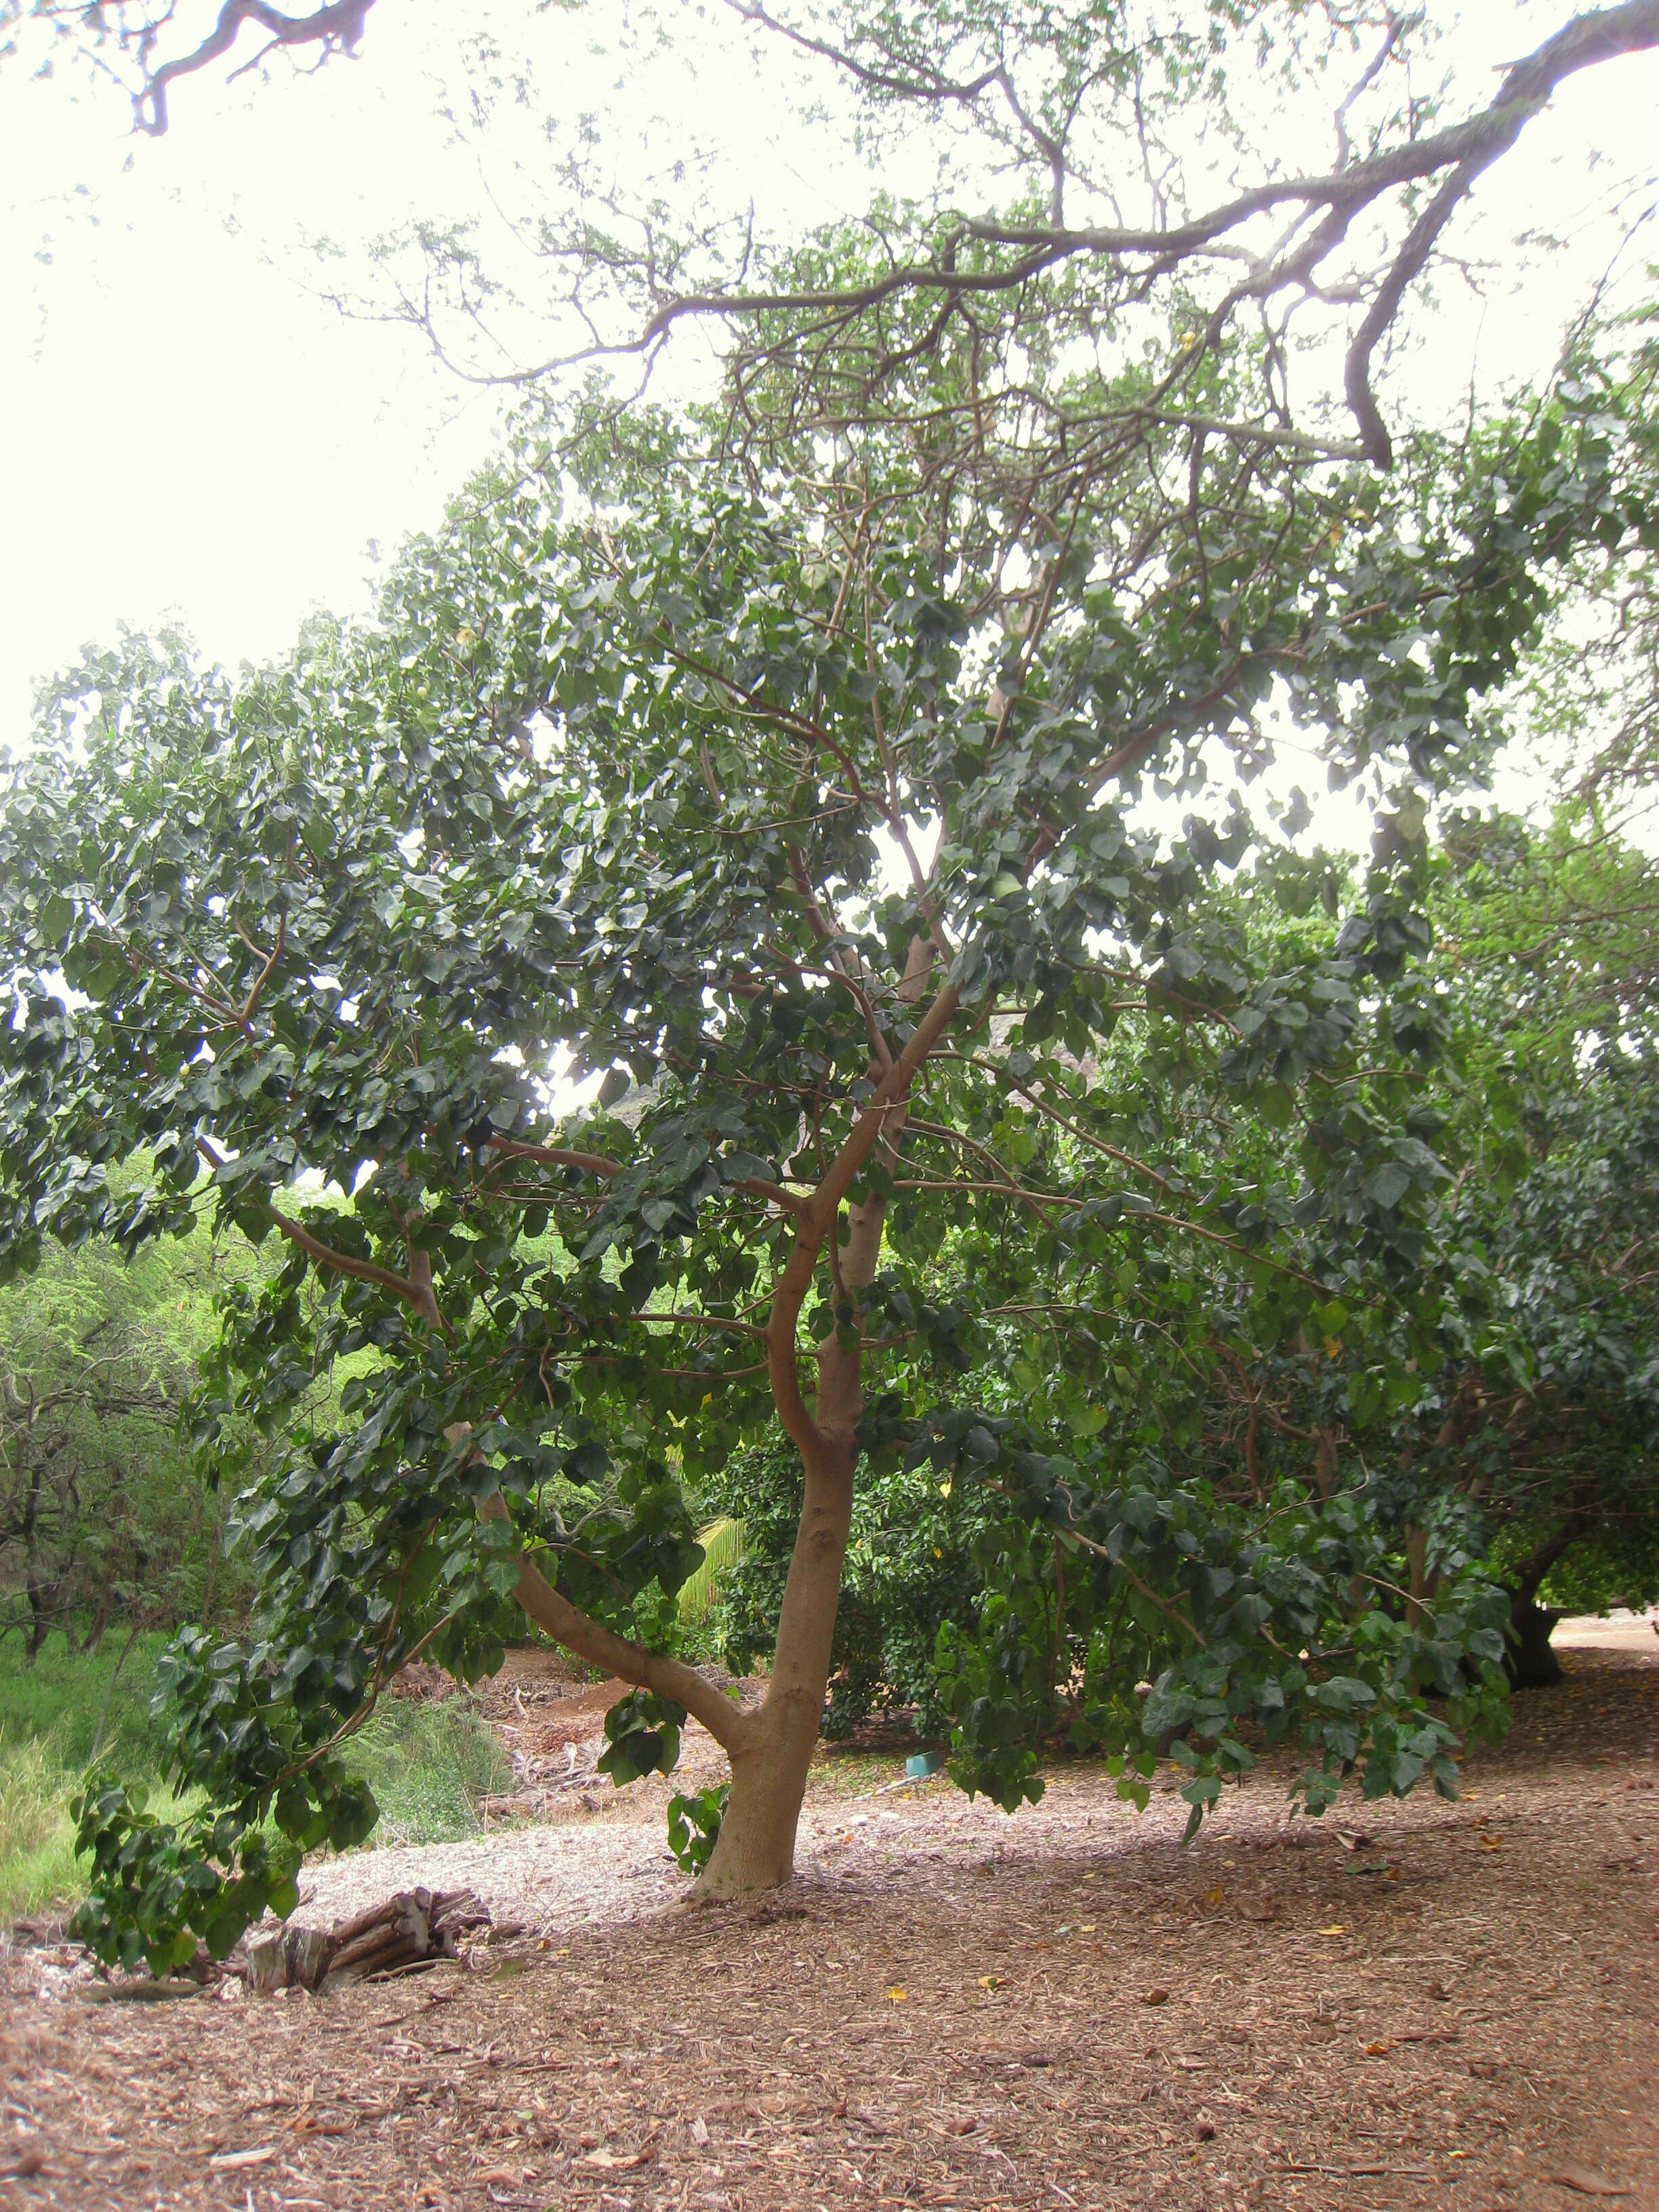 Image of Lantern tree